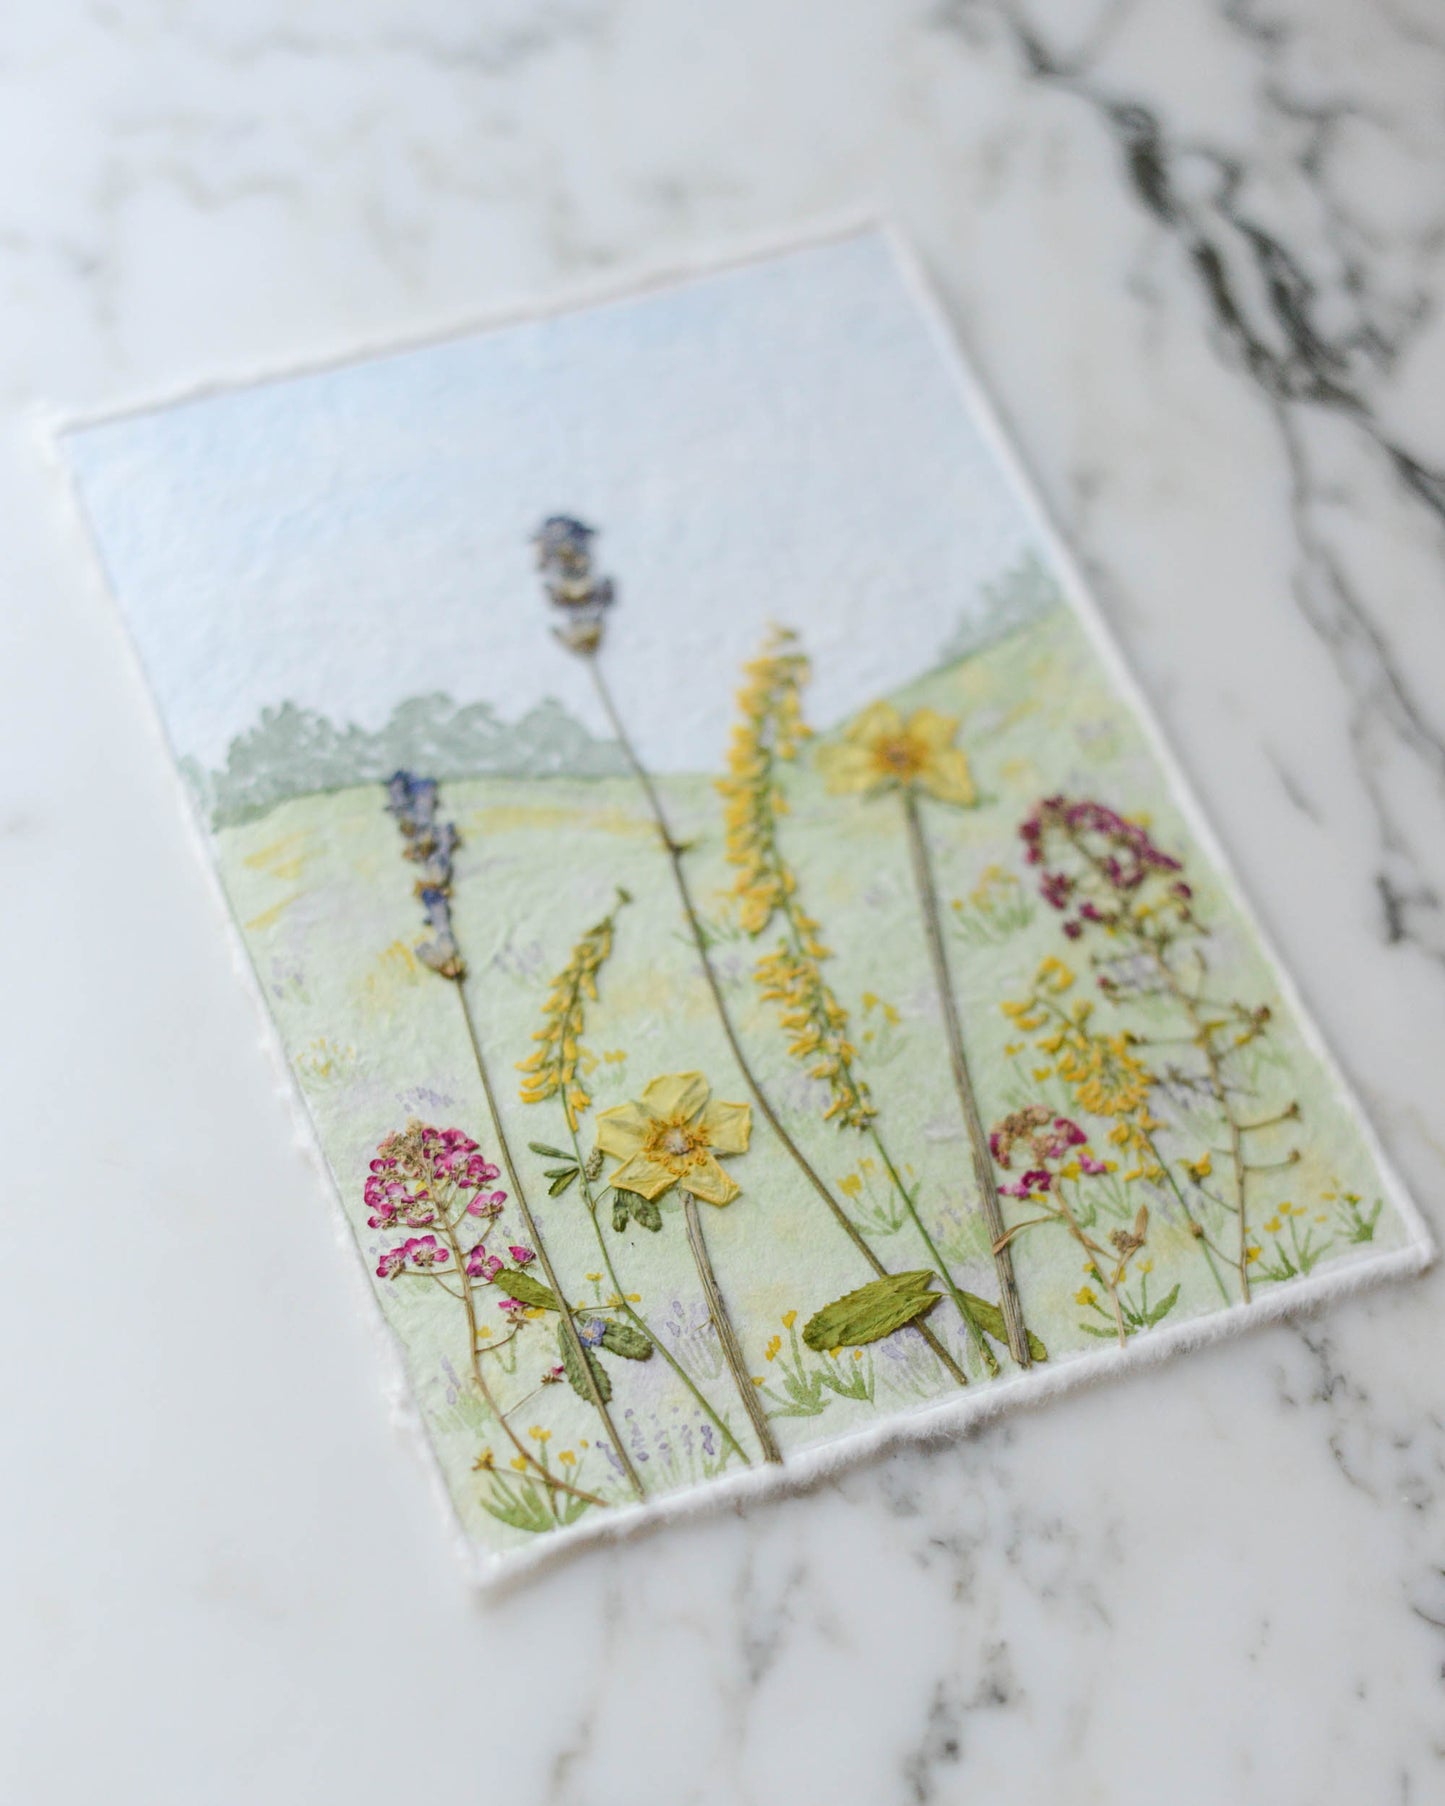 Hillside Wildflowers - Original Artwork, 5x7" Watercolor and Pressed Flowers